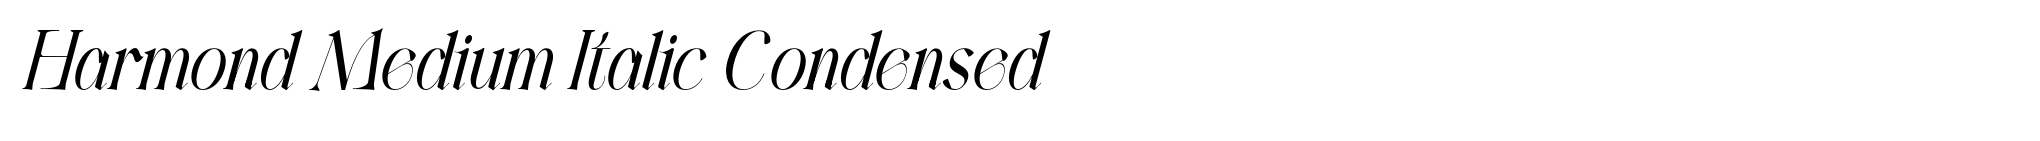 Harmond Medium Italic Condensed image